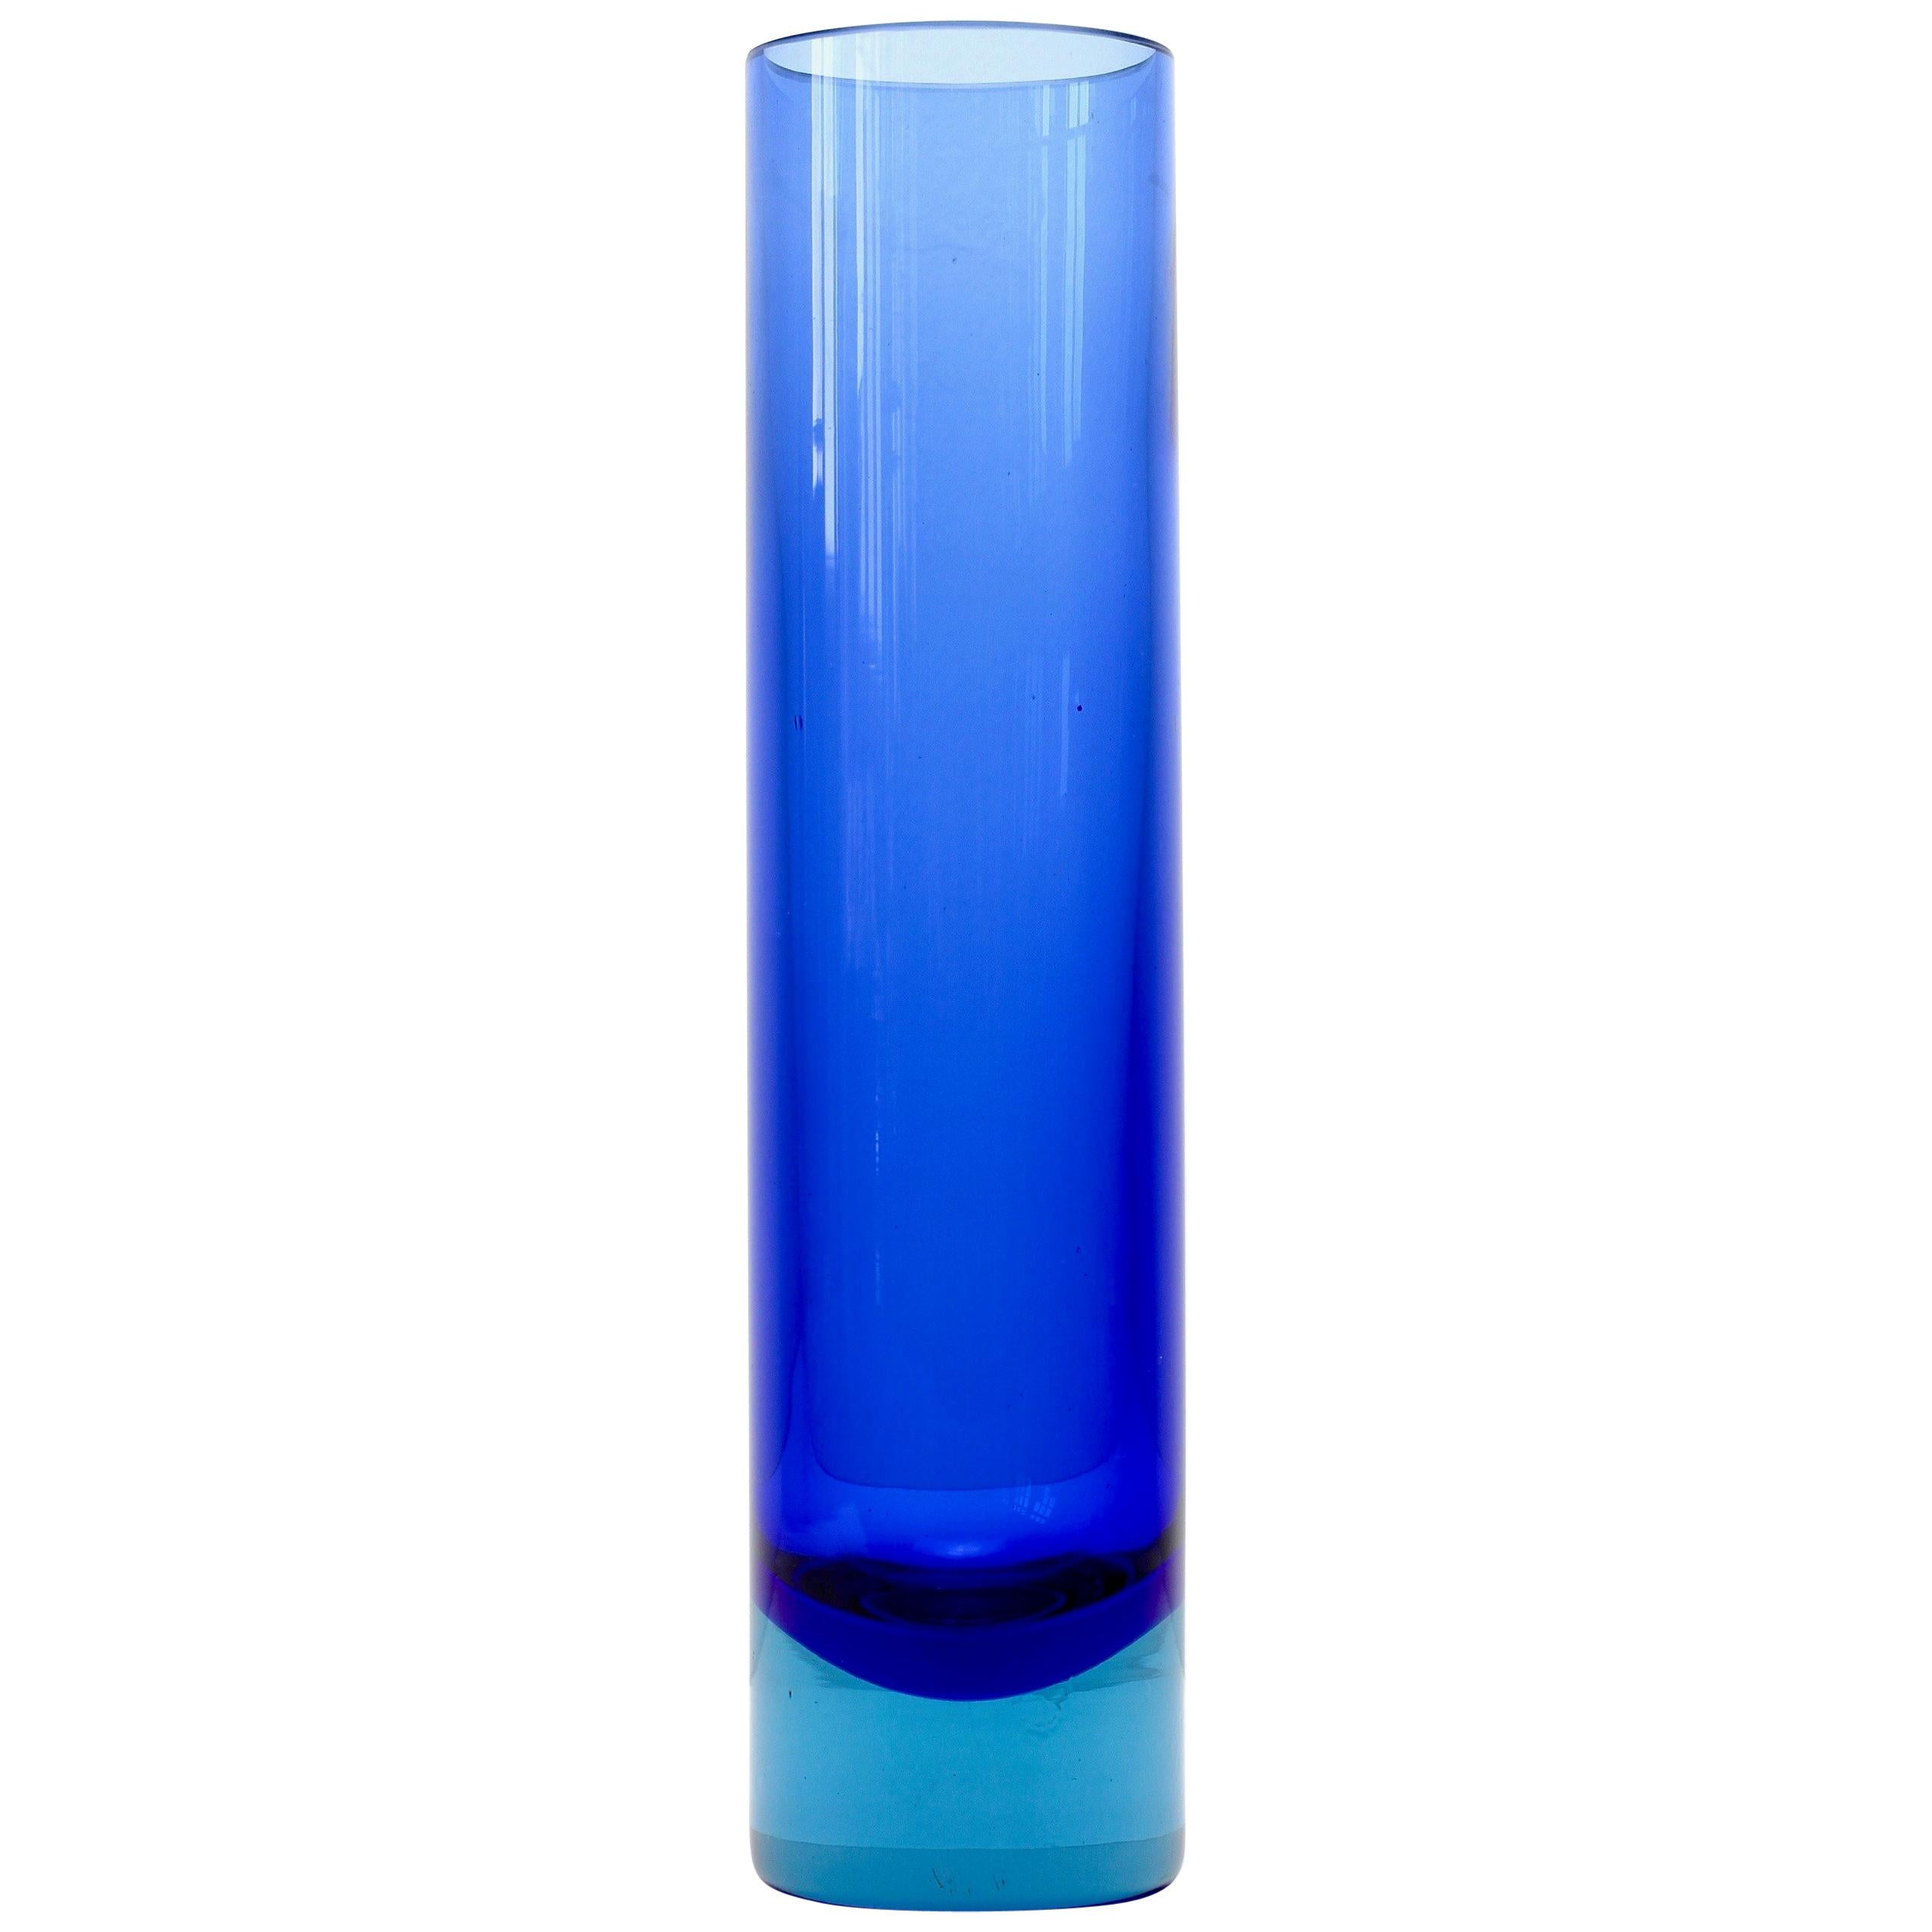 Flavio Poli Style Tall Blue Murano Glass 'Sommerso' Vase, circa 1970s